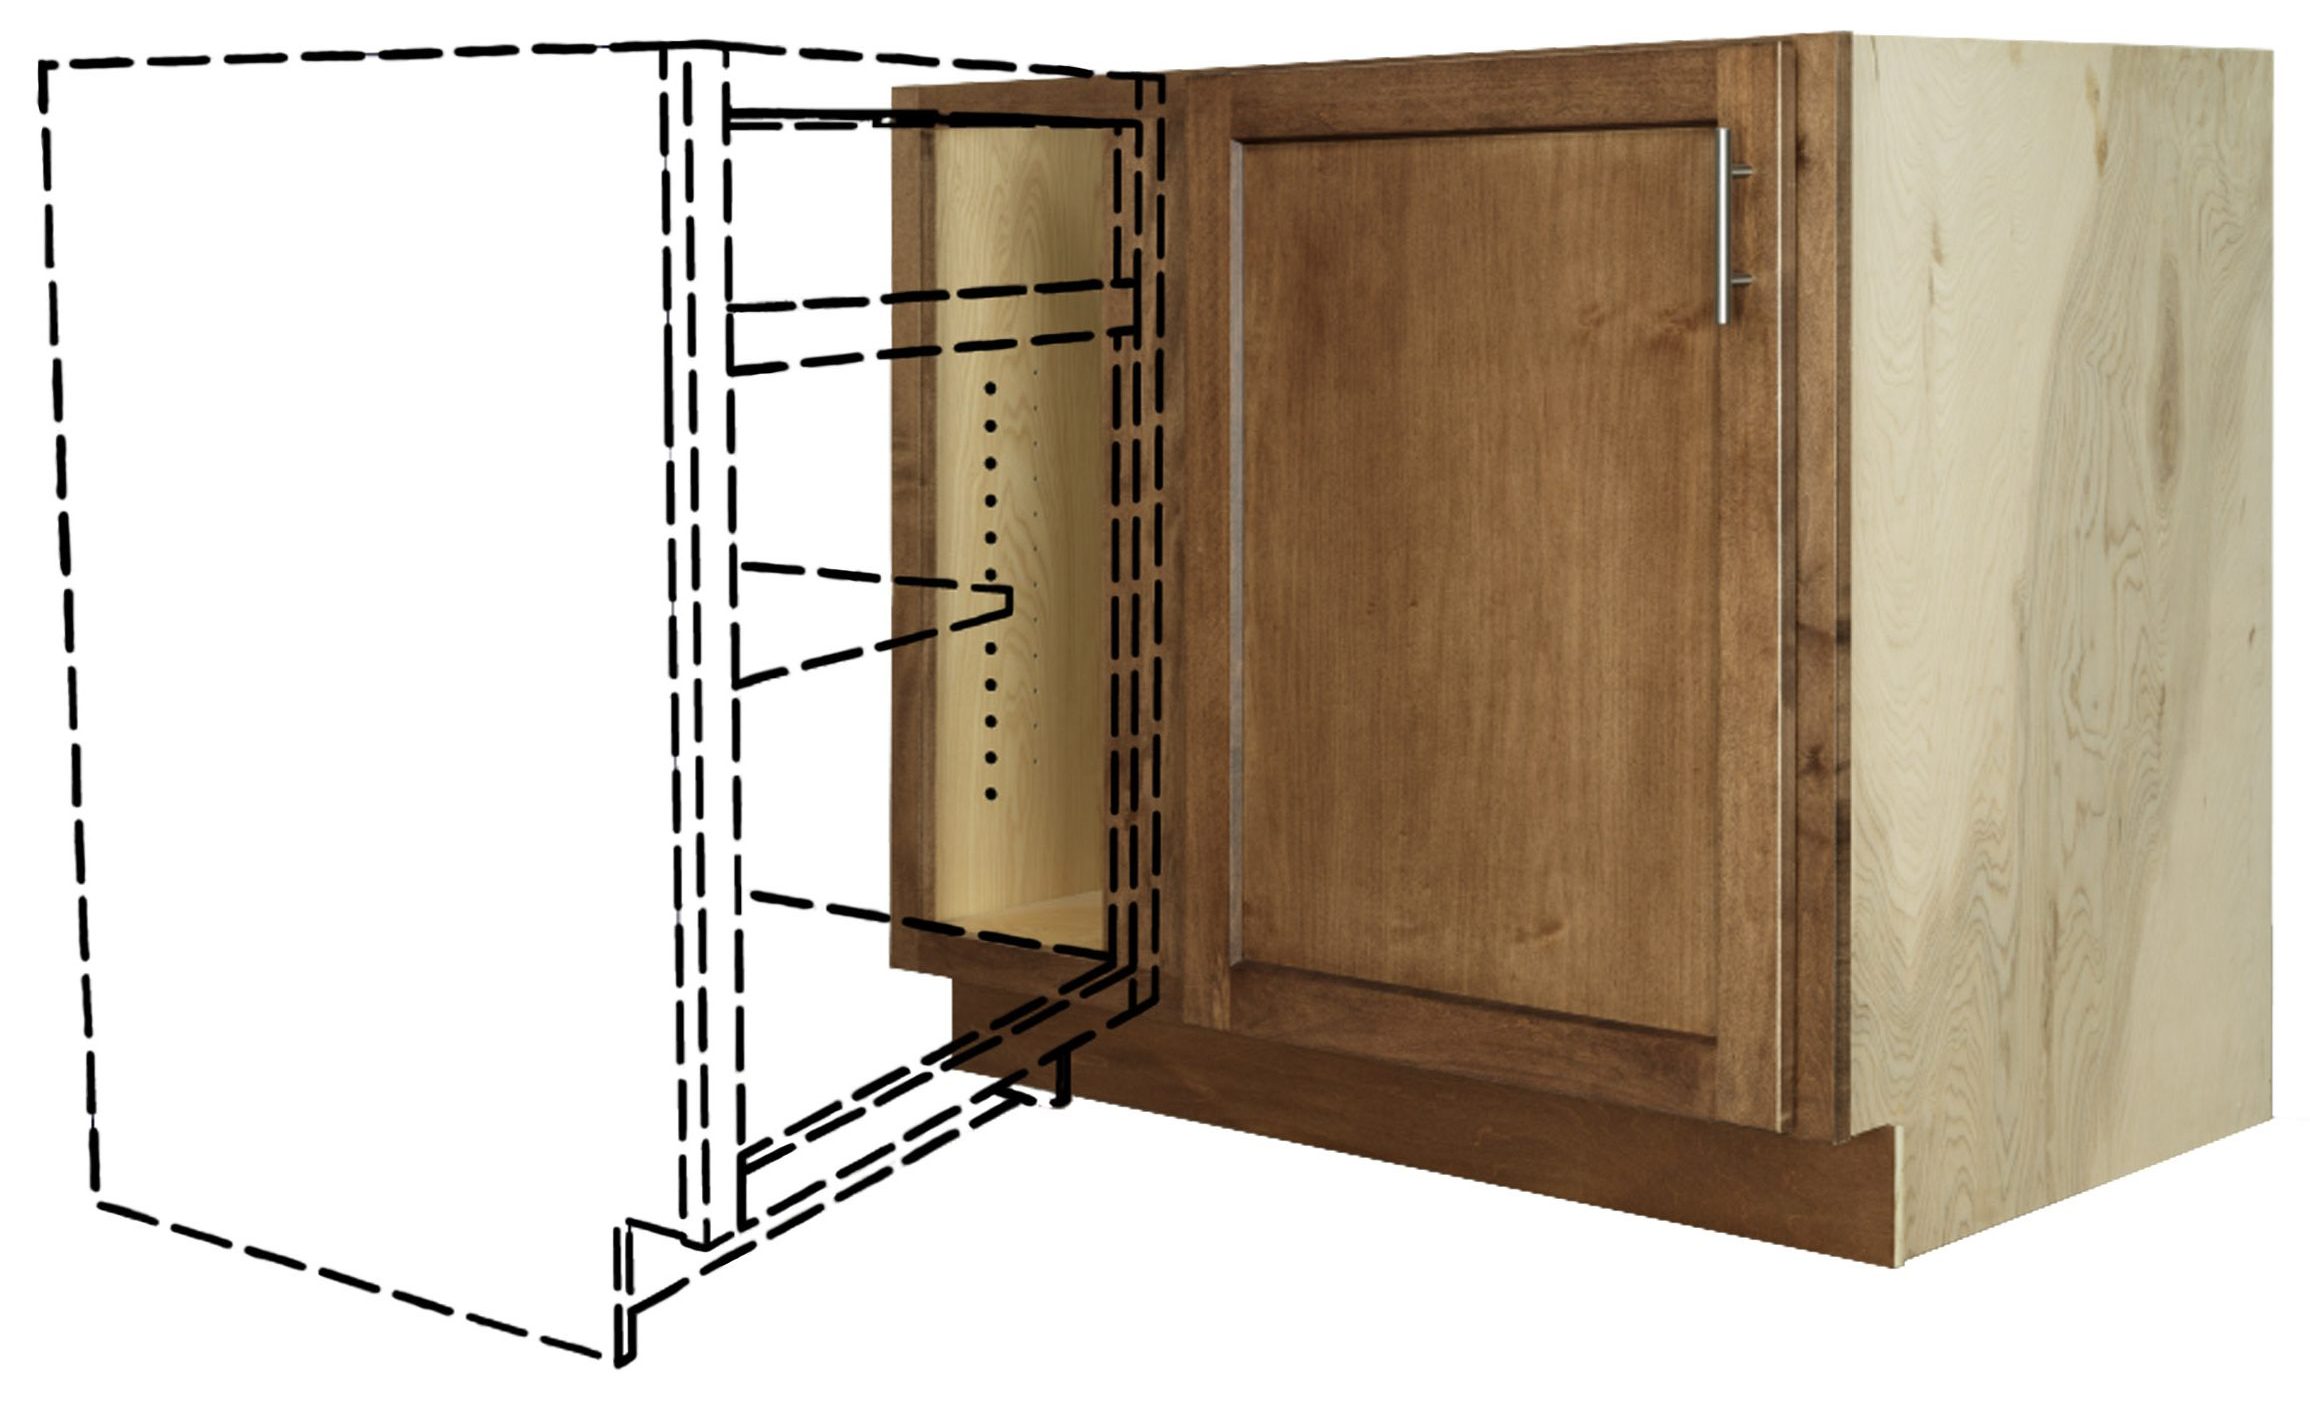 A blind corner cabinet